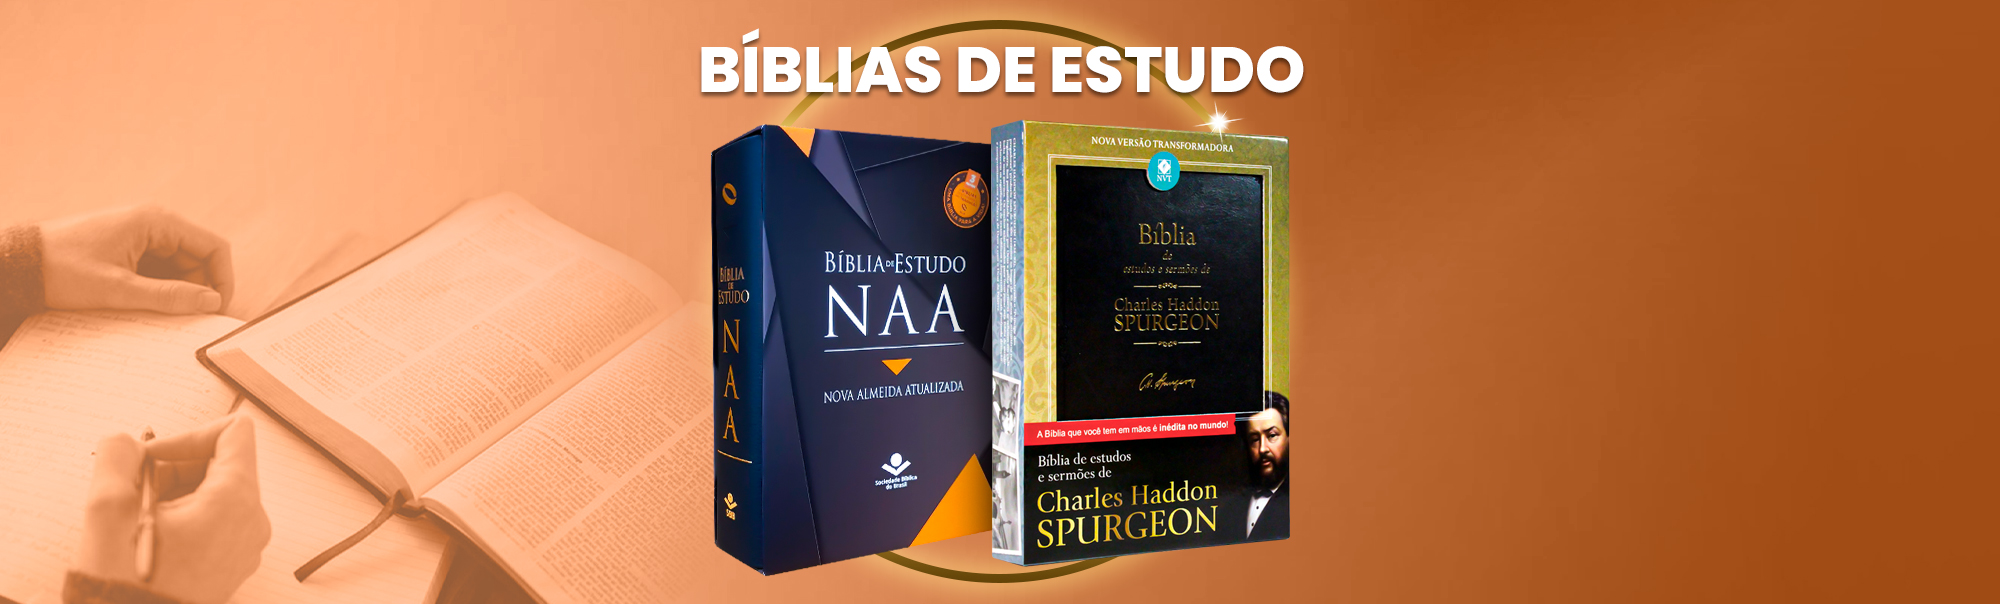 show de ofertas em bíblias de estudos da livraria cristã emmerick